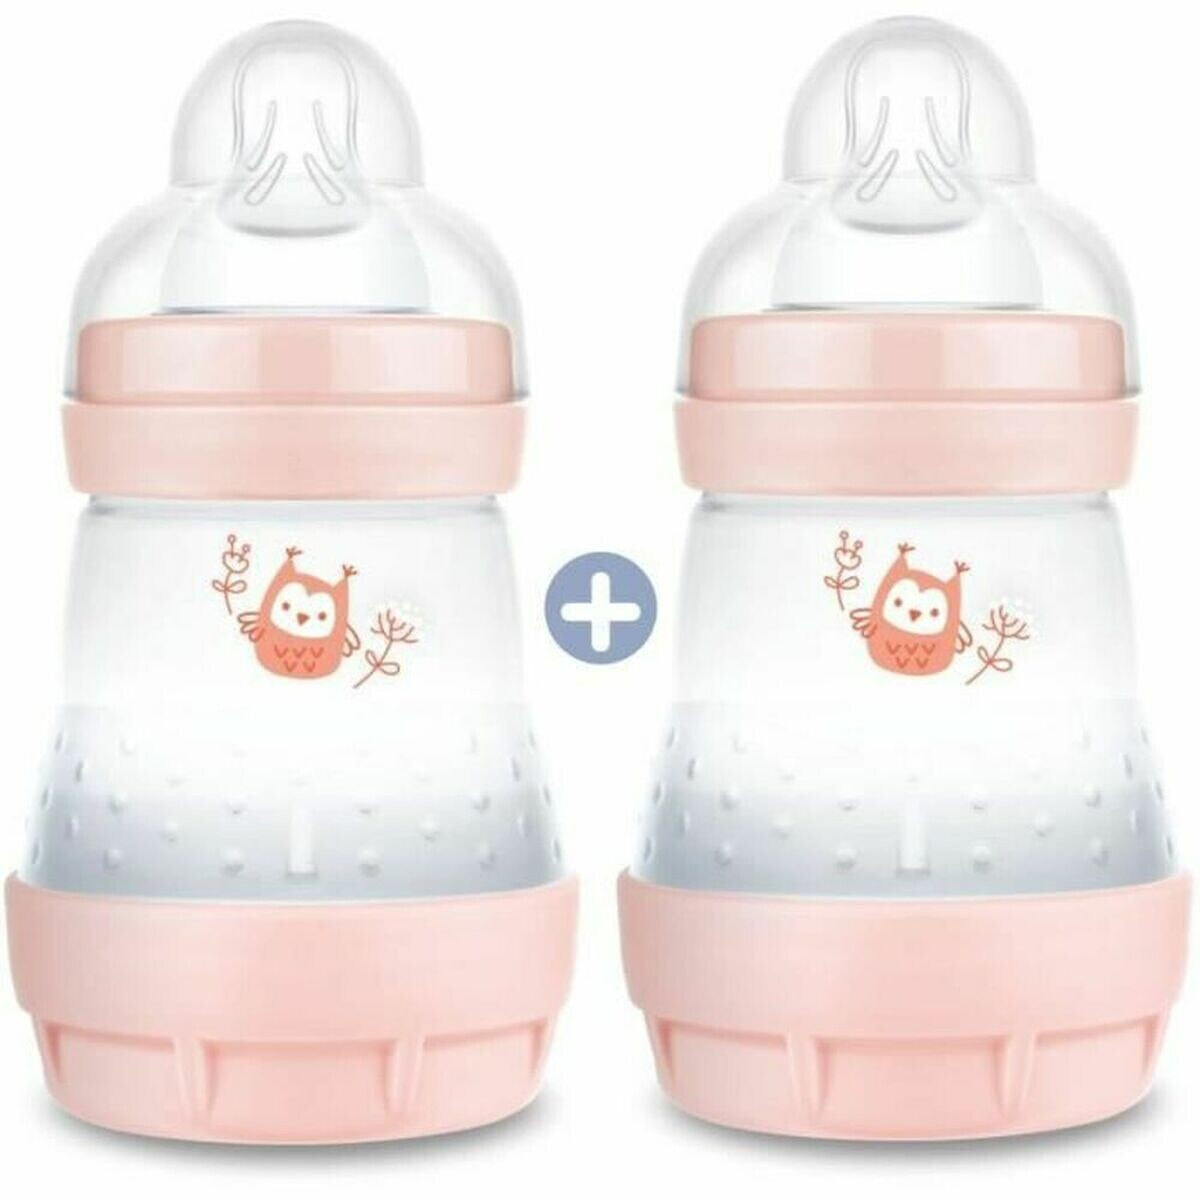 Set of baby's bottles MAM Easy Start 160 ml